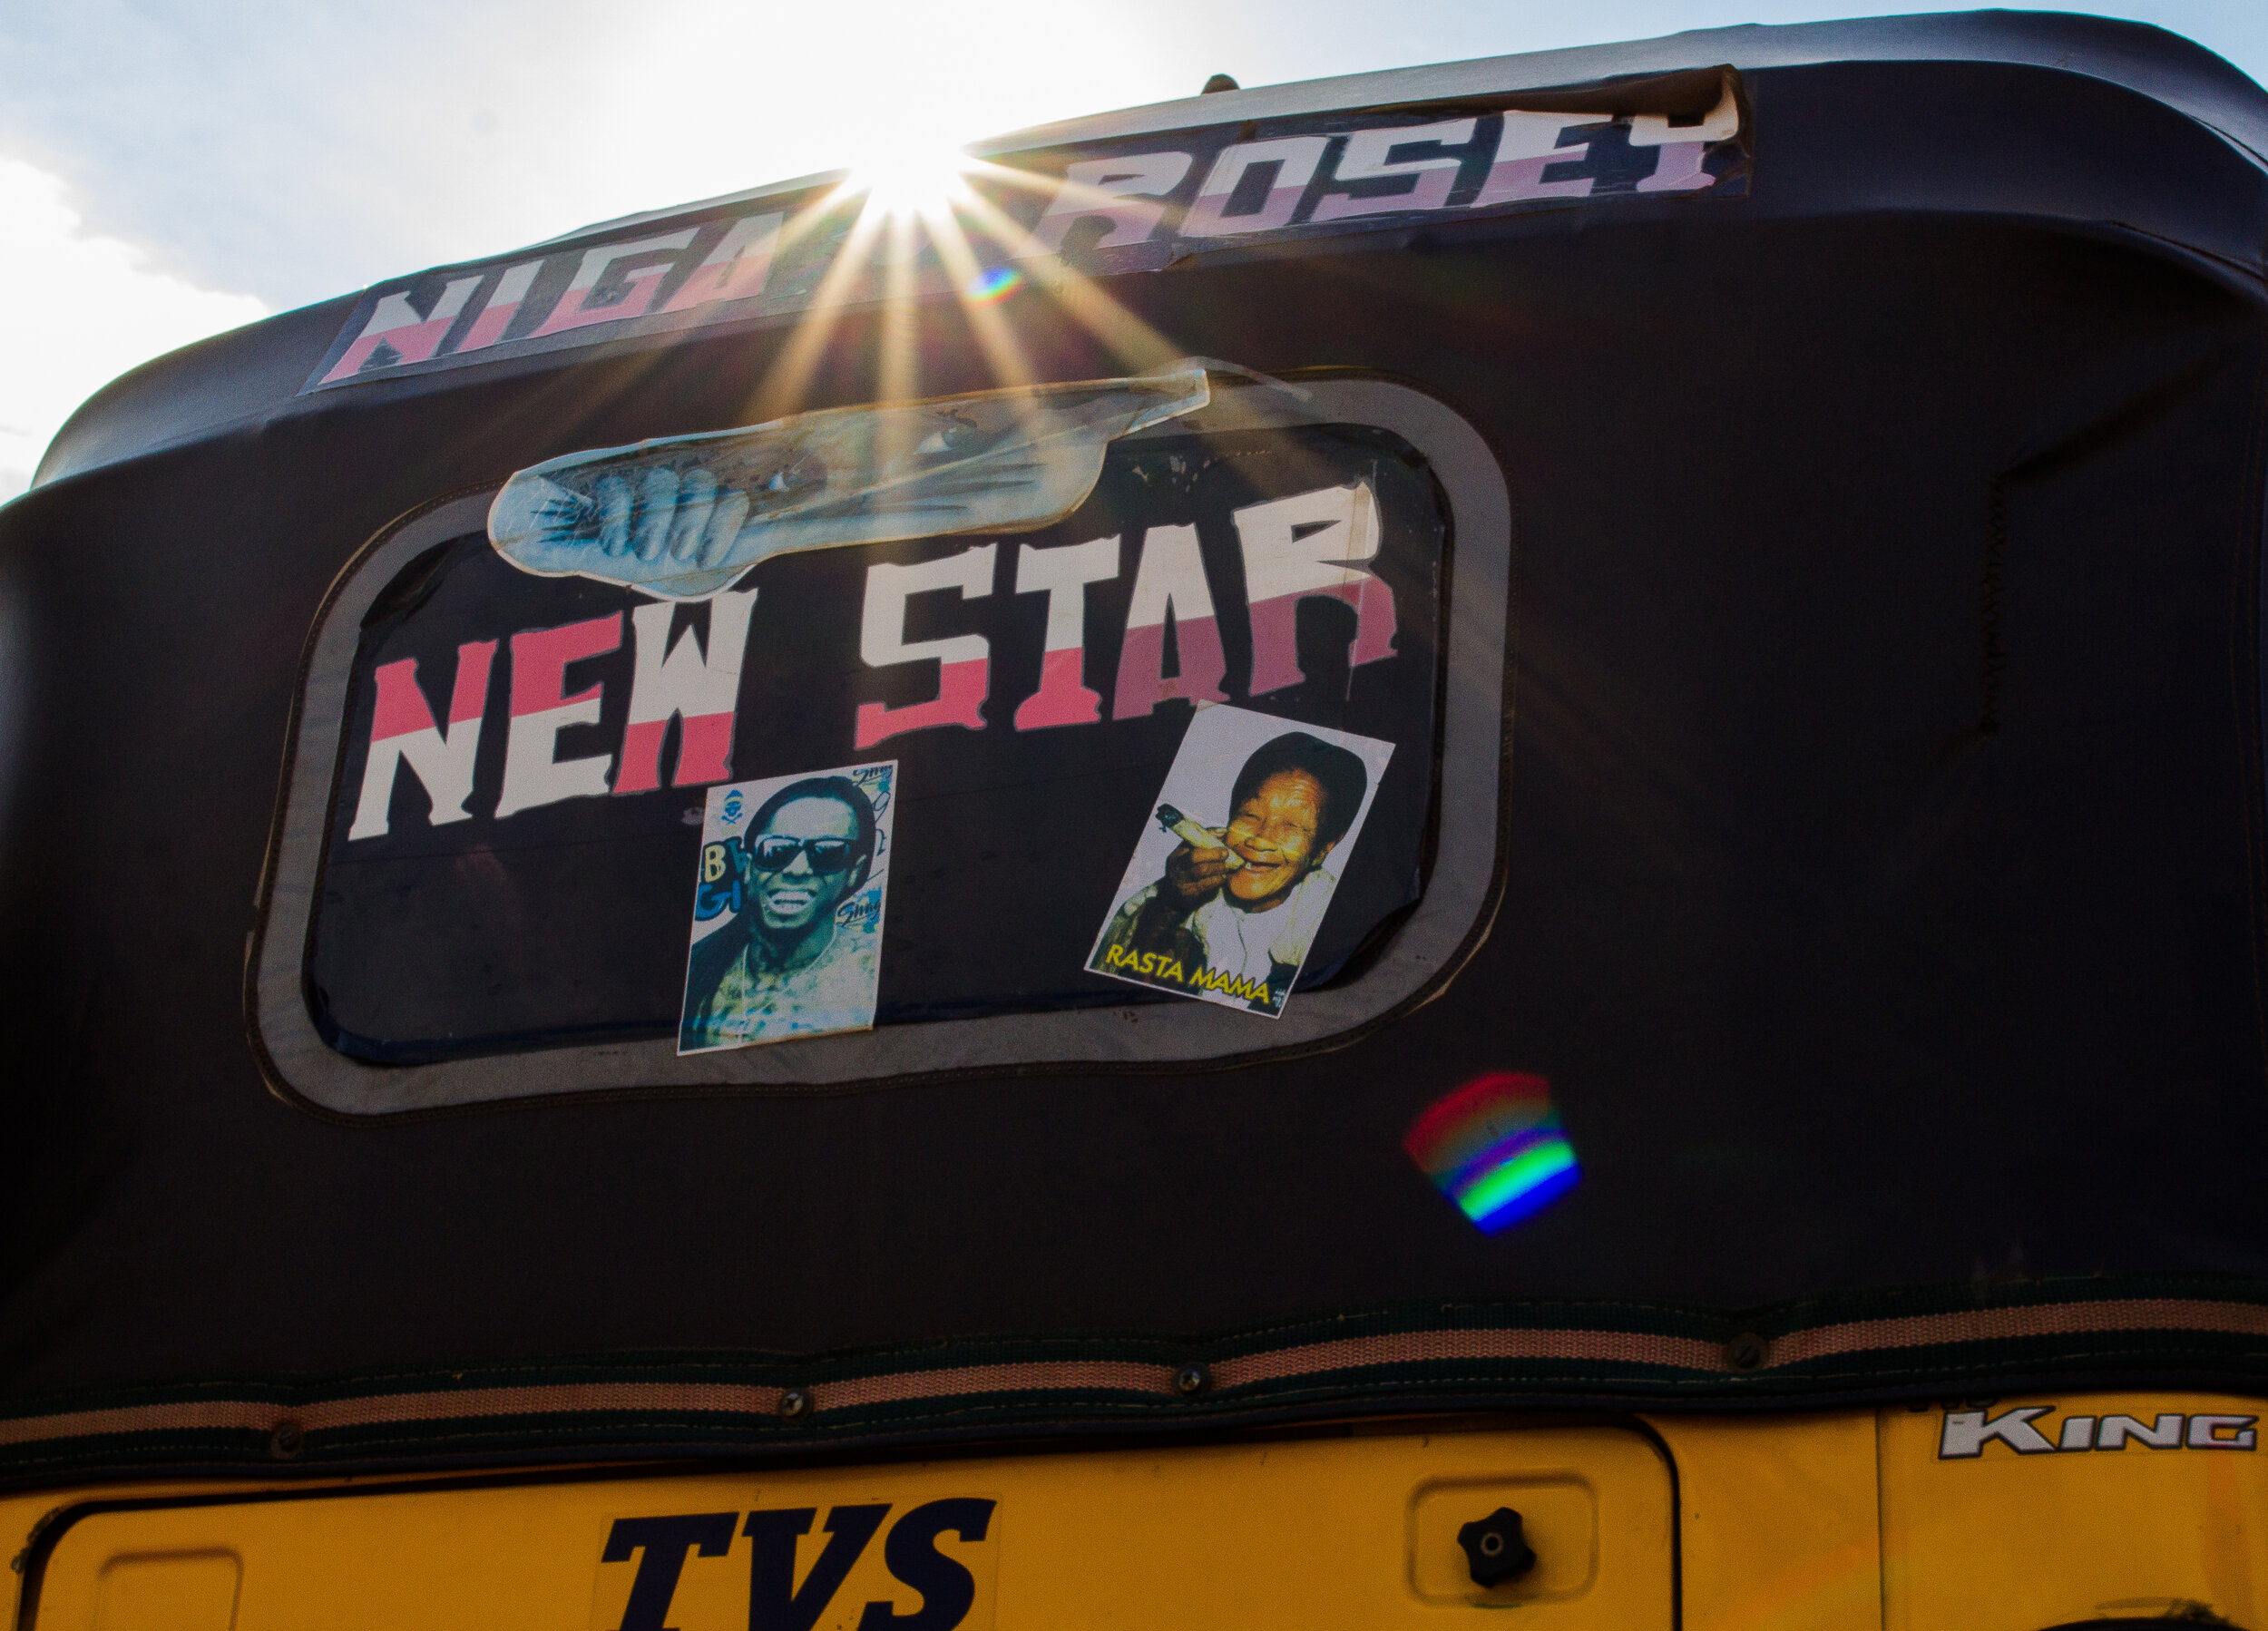 "Niga Rosey, the new star"